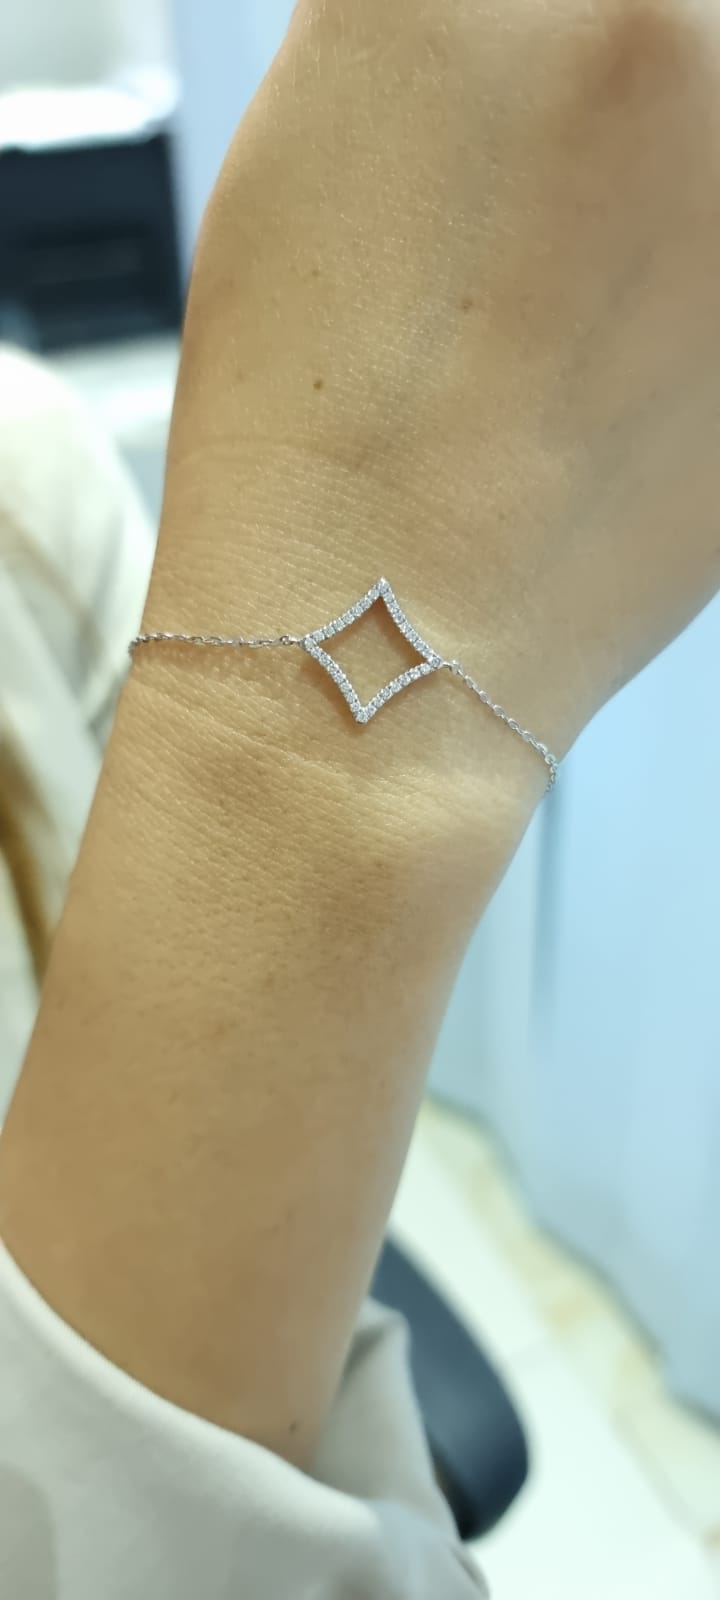 Geometric Design Diamond Bracelet In 18k White Gold.